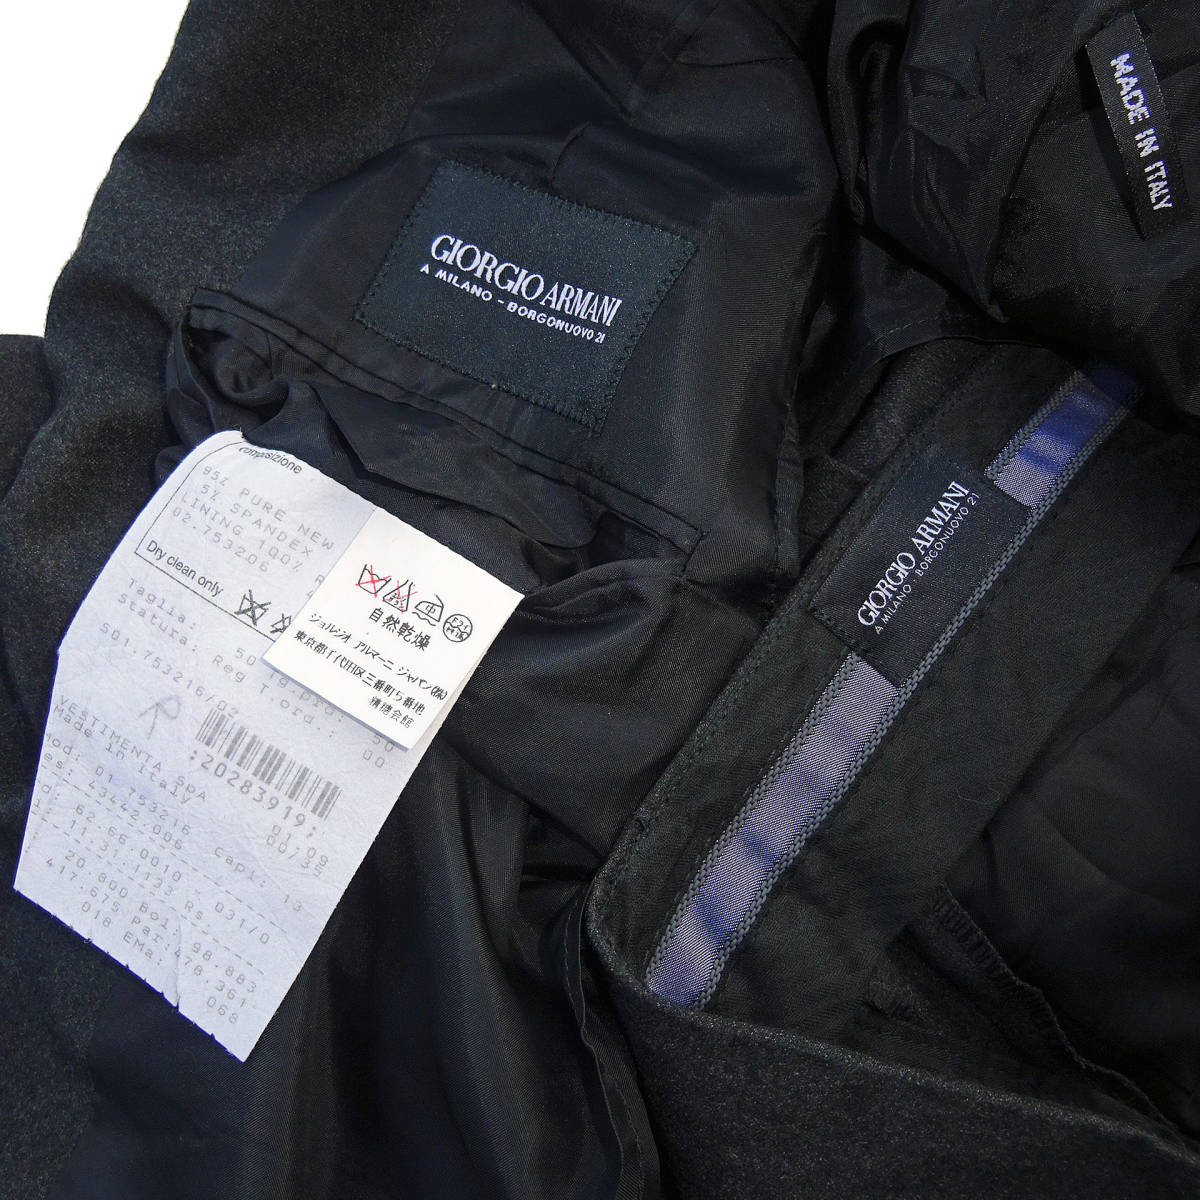  в это время 90\'s внутренний стандартный товар хорошая вещь Италия производства чёрный Laverda gGIORGIO ARMANIjoru geo Armani шерсть однобортный костюм верх и низ угольно-серый 50